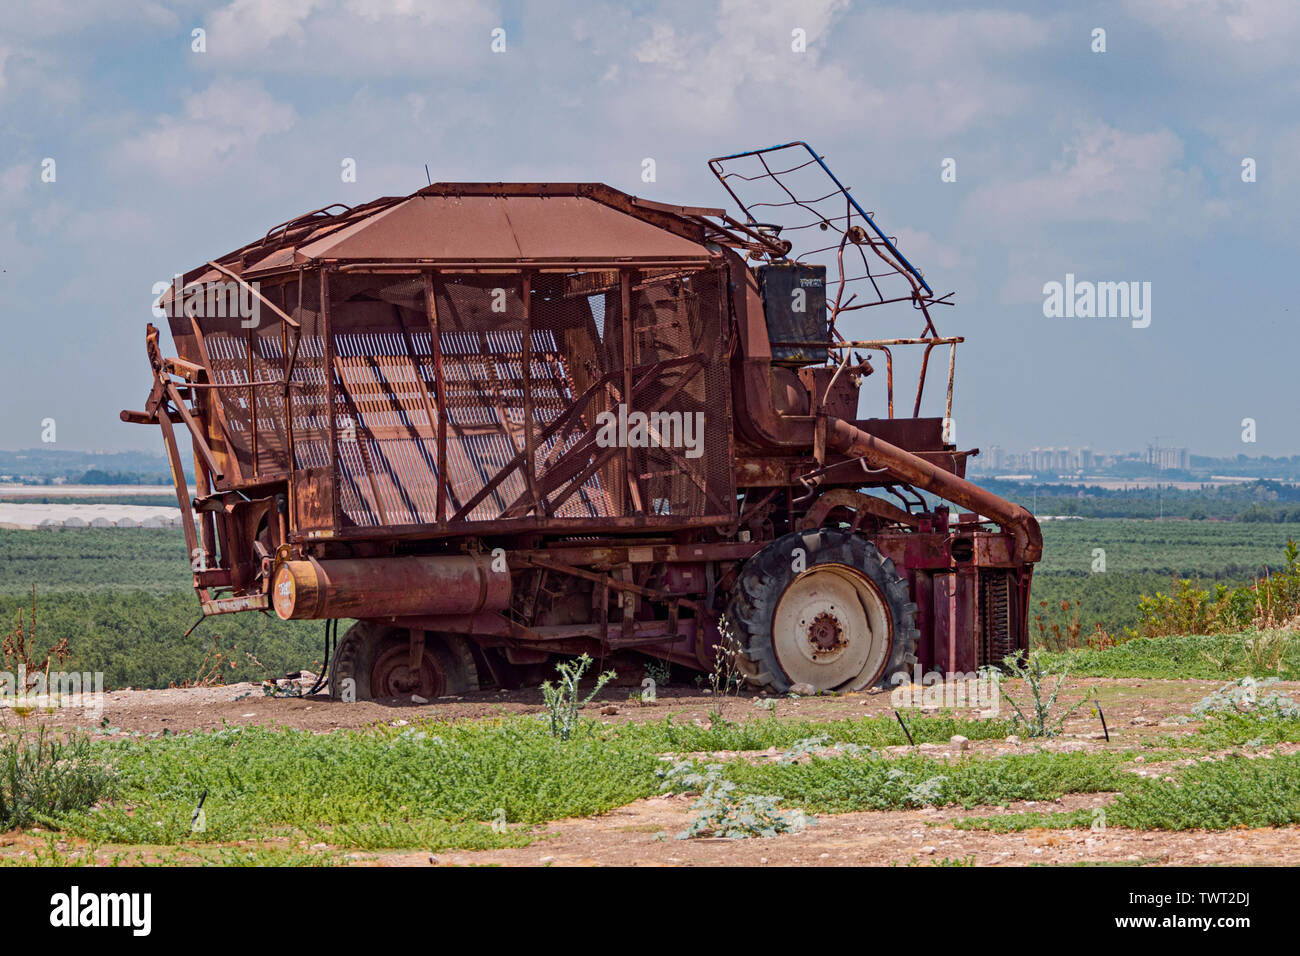 A broken down rusty old machine cueillette du coton se trouve au-dessus de champs et de serres modernes en Israël avec une ville palestinienne dans l'arrière-plan Banque D'Images